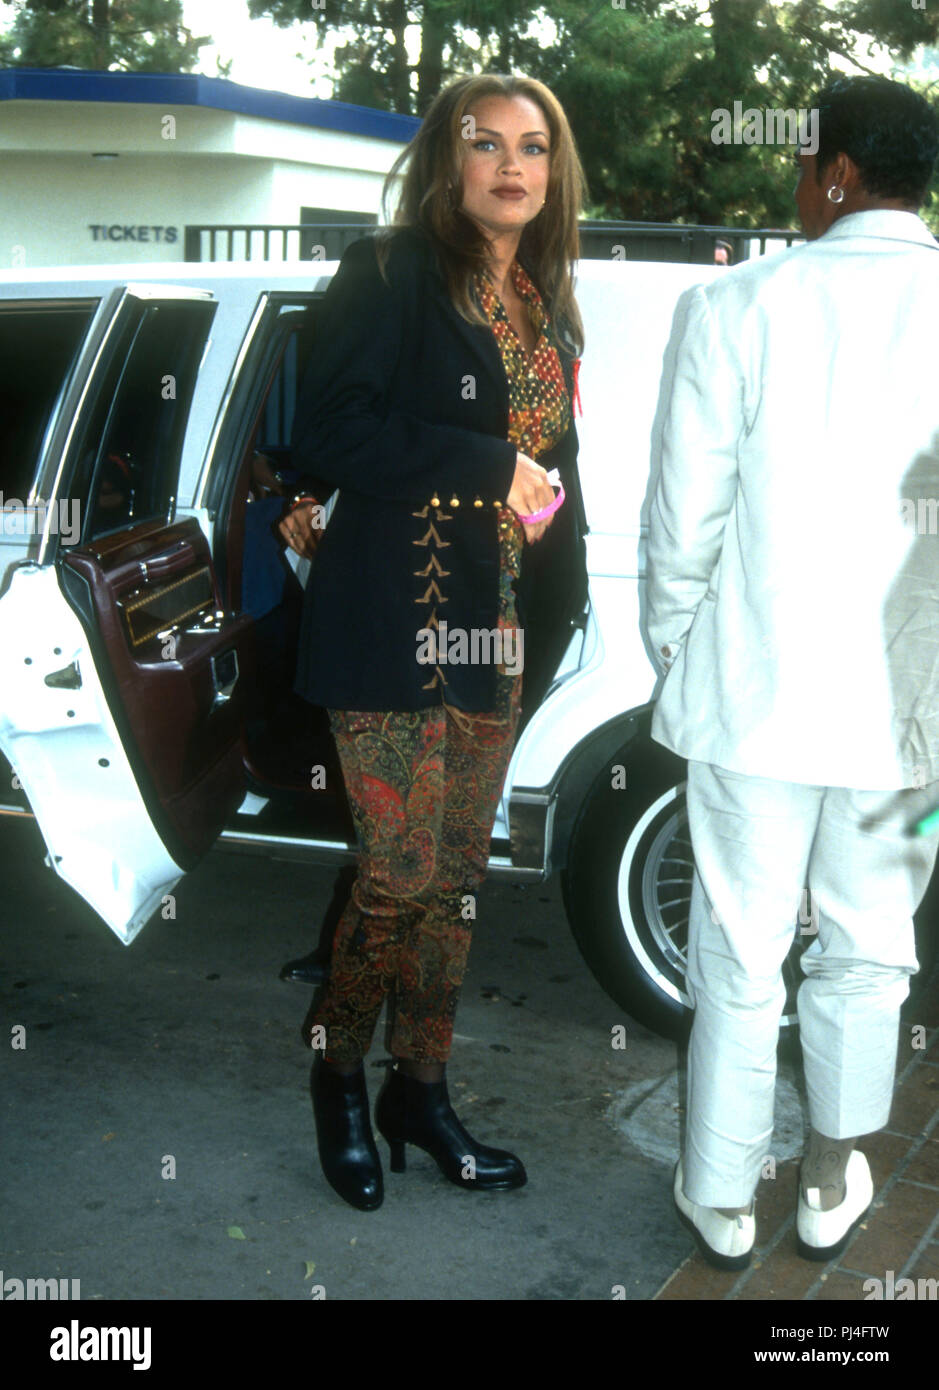 LOS ANGELES, CA - 9 septembre : la chanteuse/actrice Vanessa Williams s'occupe le neuvième rapport annuel sur MTV Video Music Awards le 9 septembre 1992 à Pauley Pavilion de l'UCLA, à Westwood, Los Angeles, Californie. Photo de Barry King/Alamy Stock Photo Banque D'Images